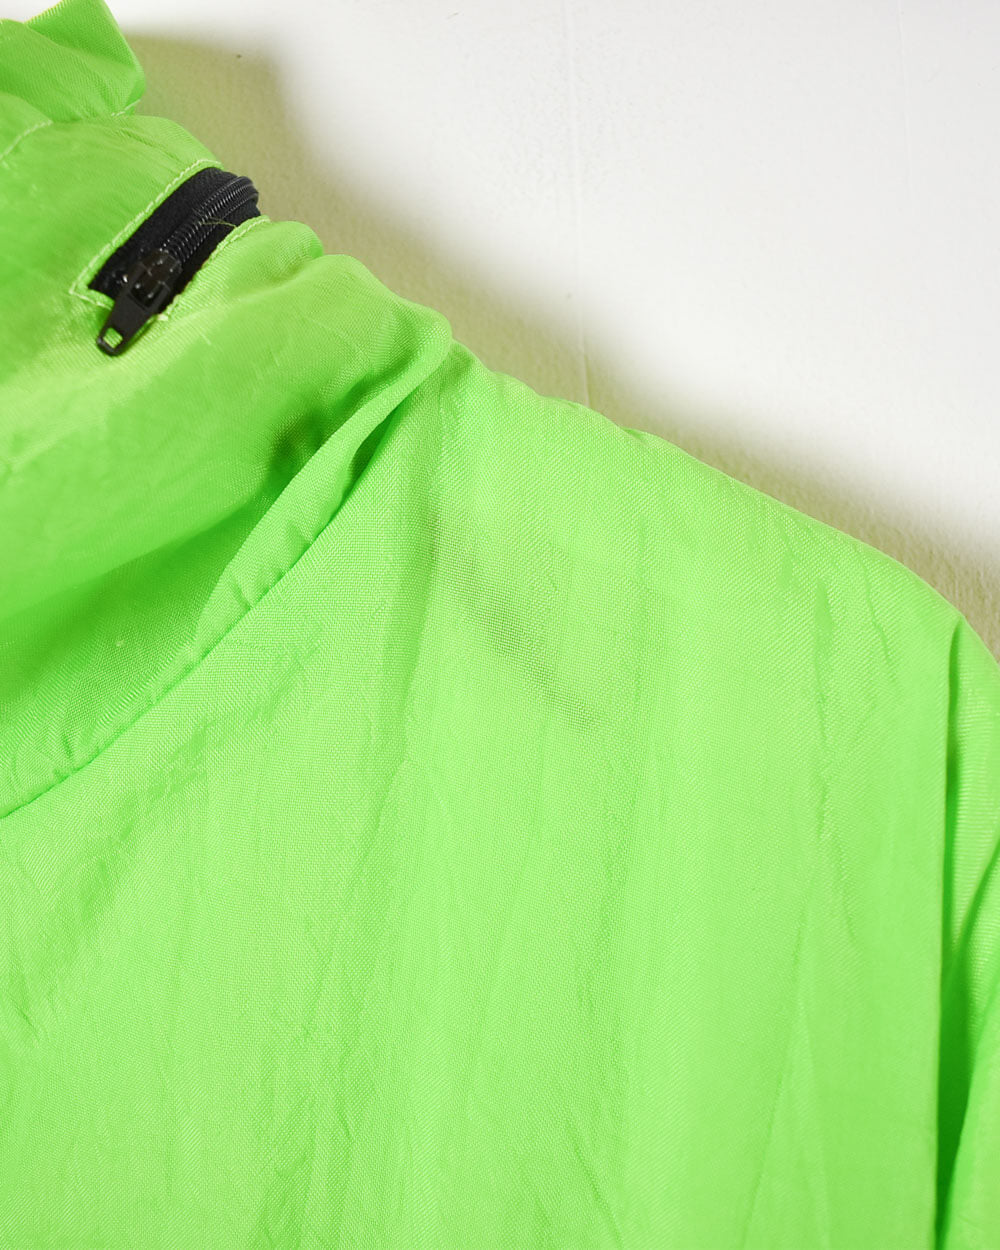 Green Reebok Women's 1/4 Zip Windbreaker Jacket - Medium